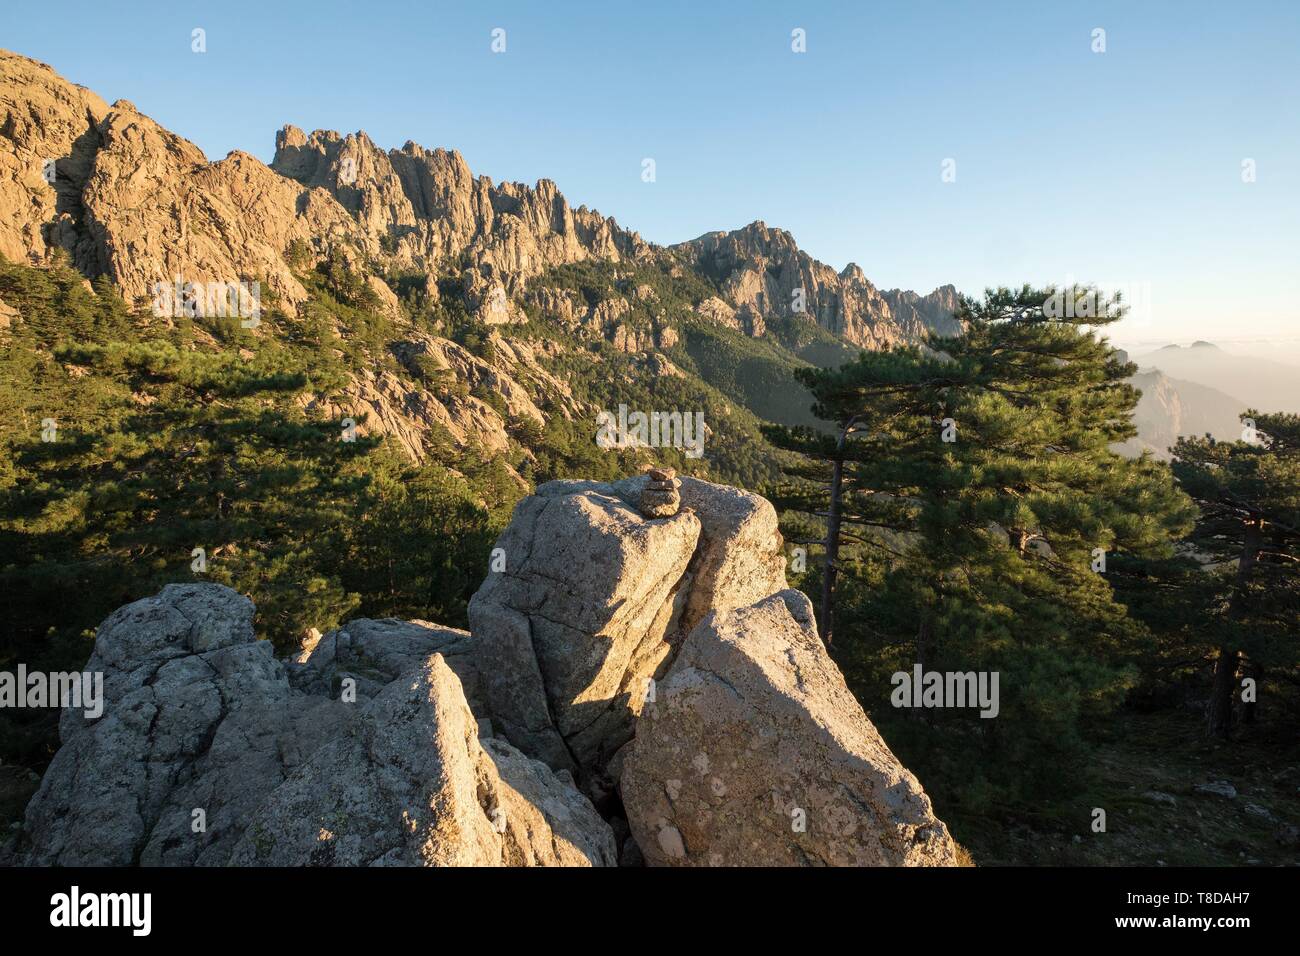 France, Corse du Sud, Quenza, Needles of Bavella from the Col de Bavella, Laricio de Corsica pine (Pinus nigra corsicana) Stock Photo